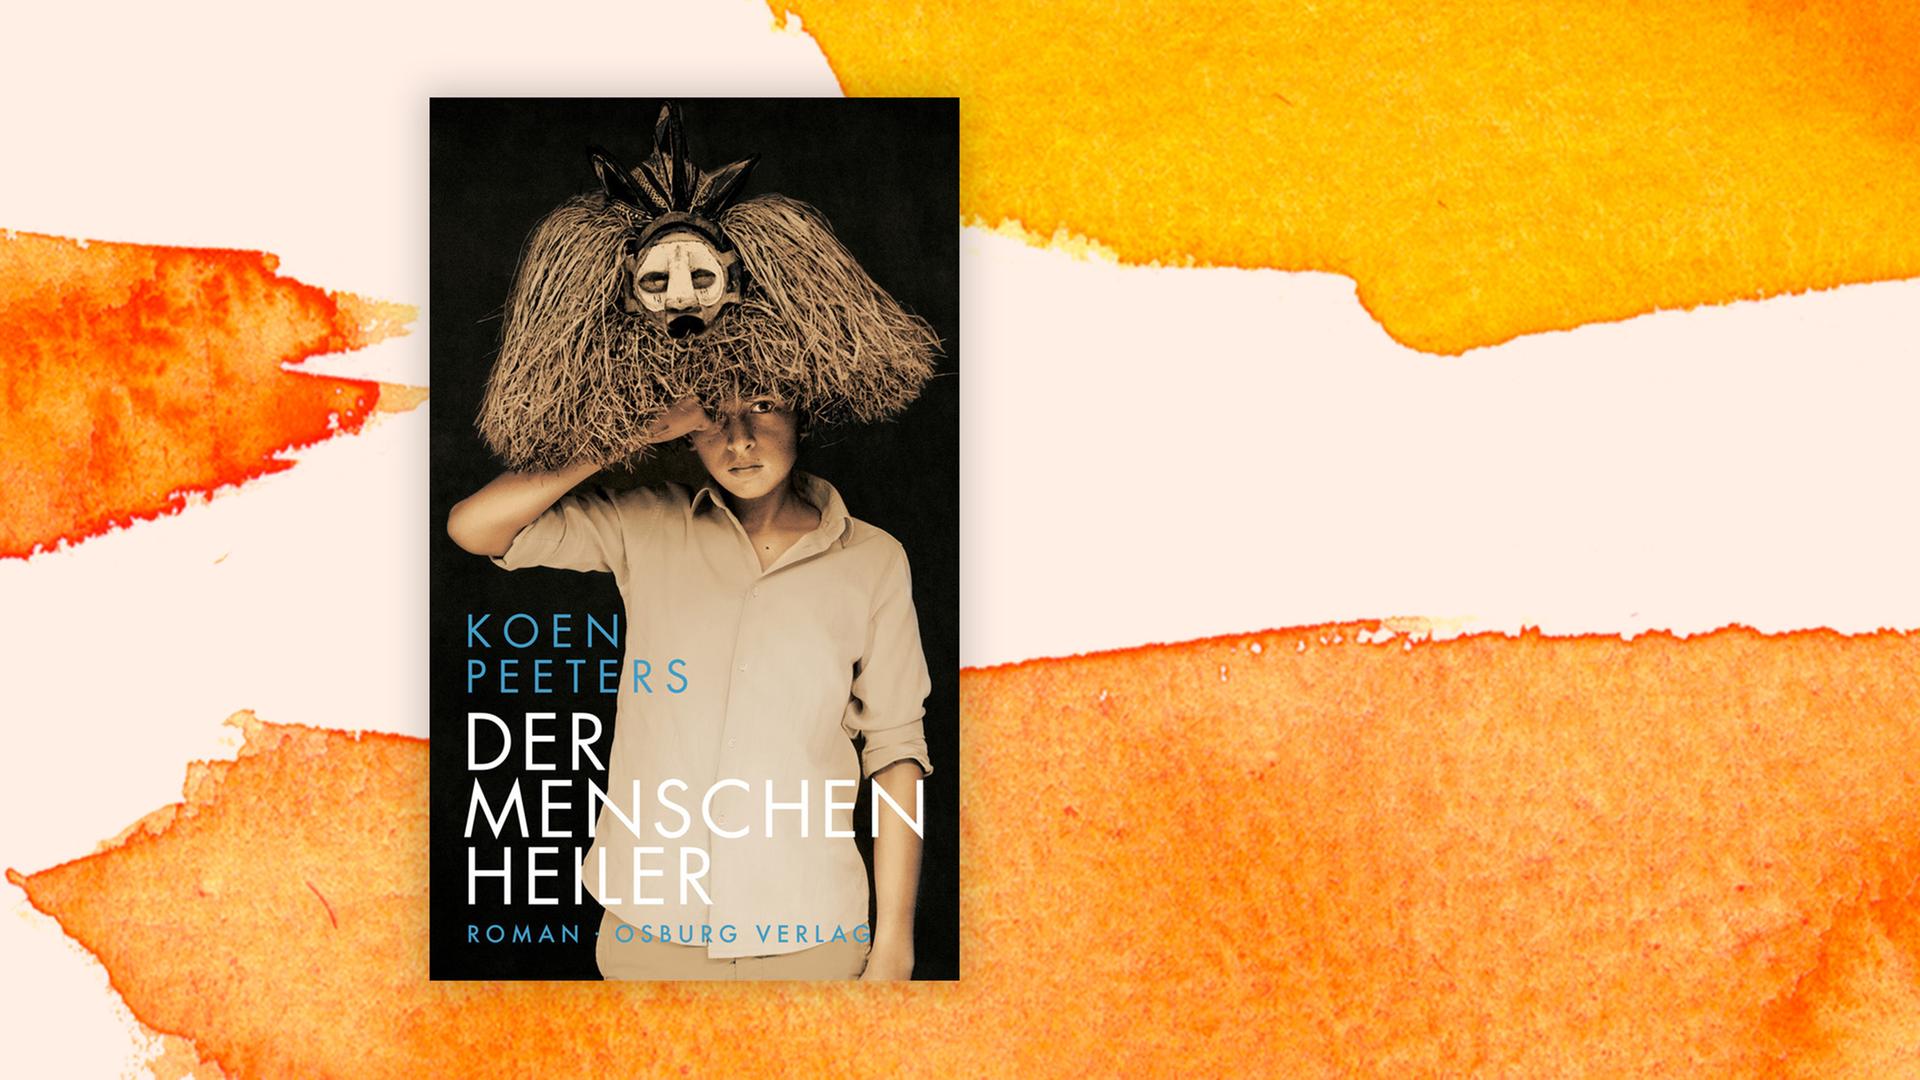 Buchcover zu Koen Peeters: "Der Menschenheiler"